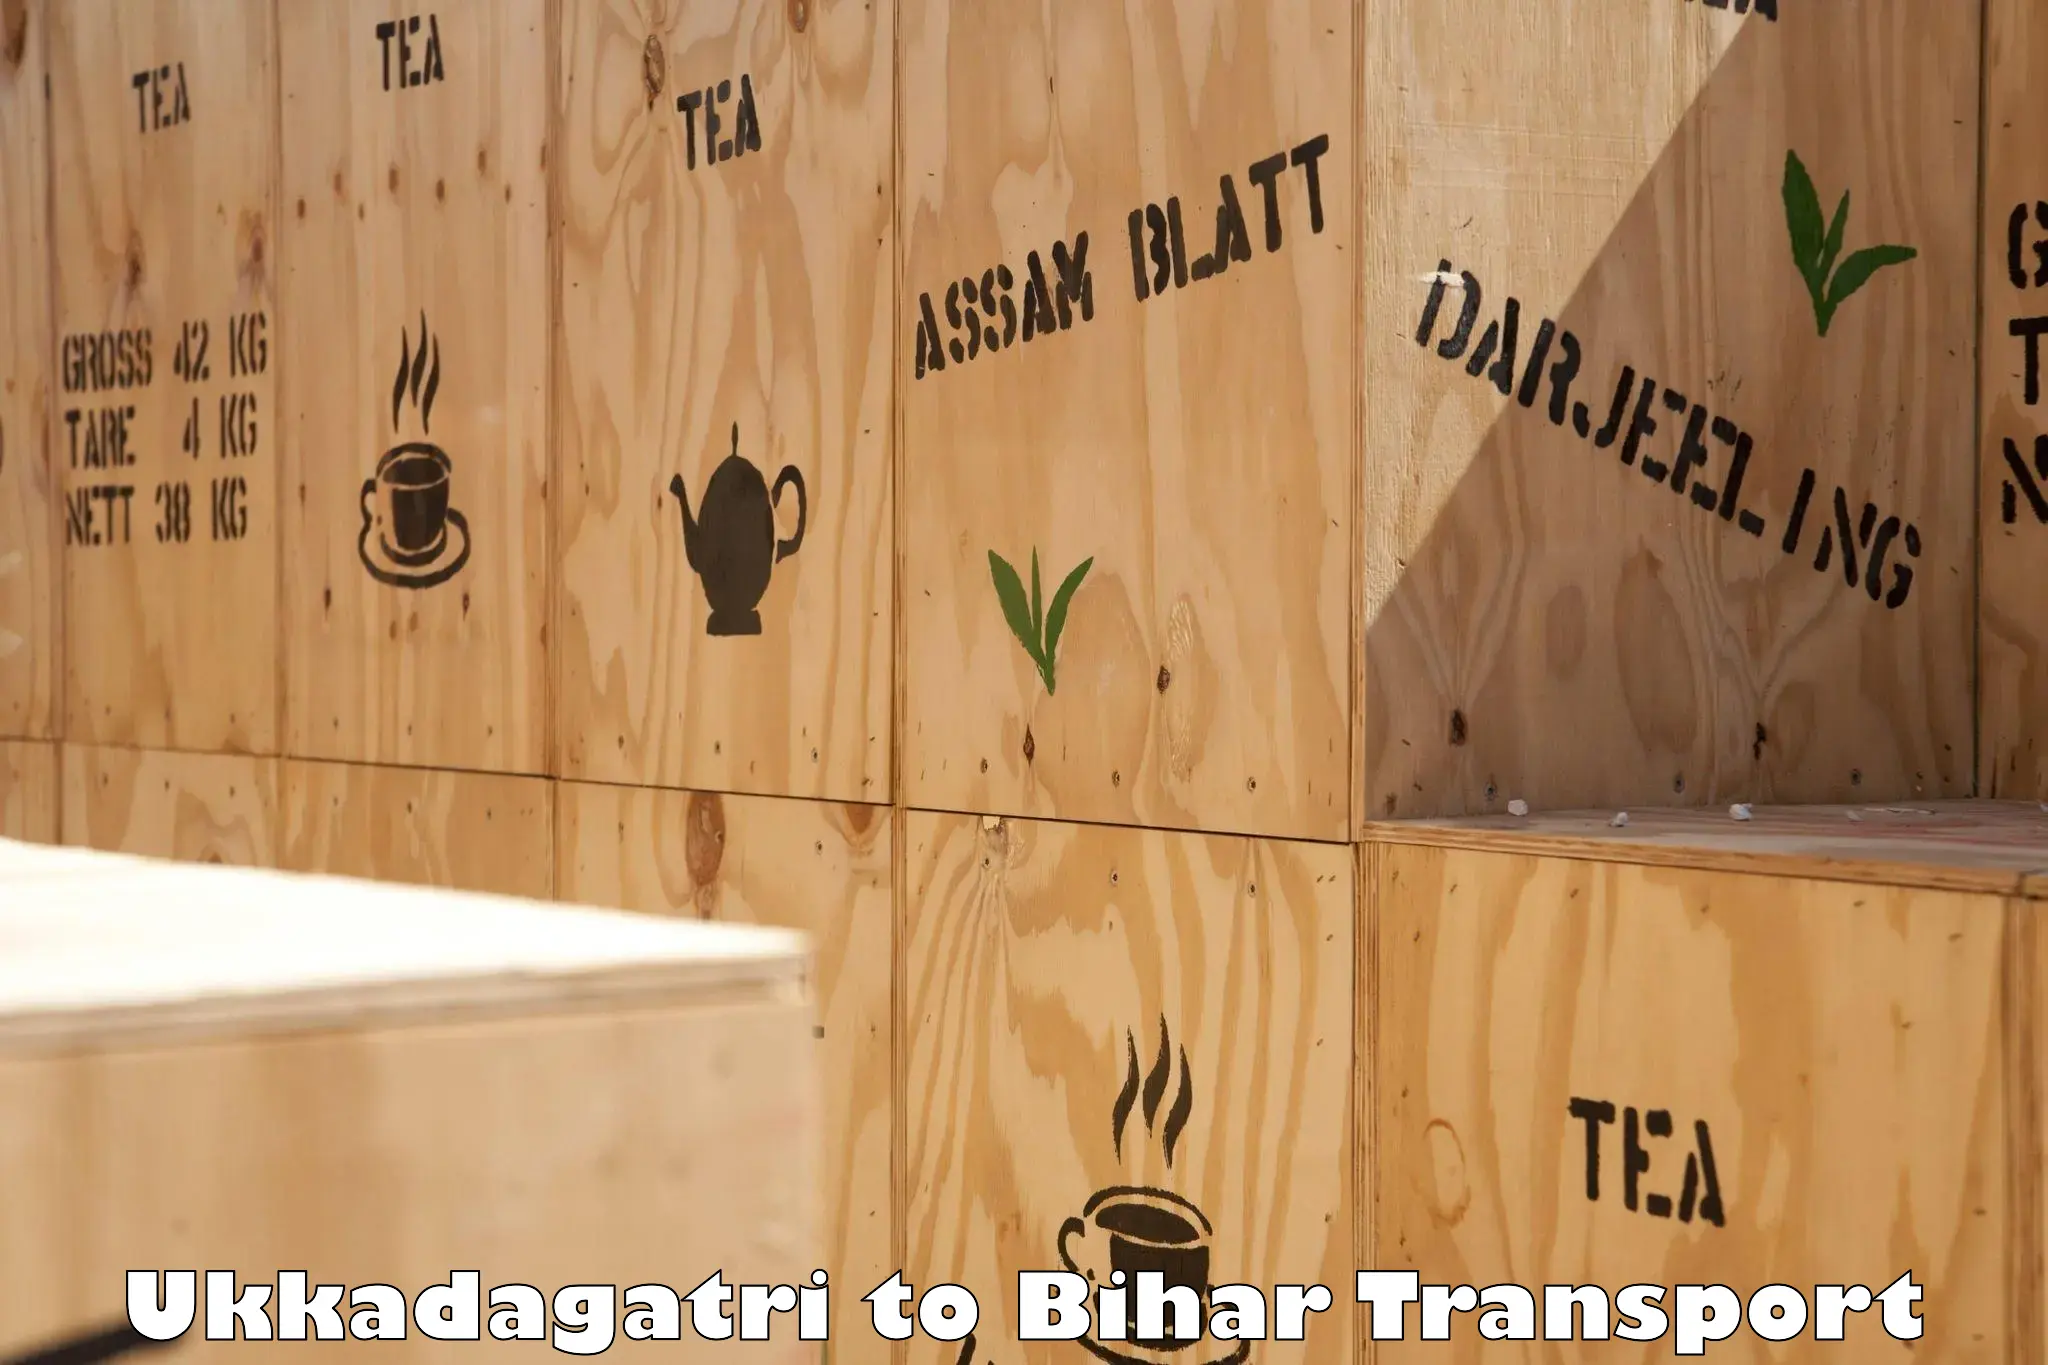 Container transport service Ukkadagatri to Sangrampur